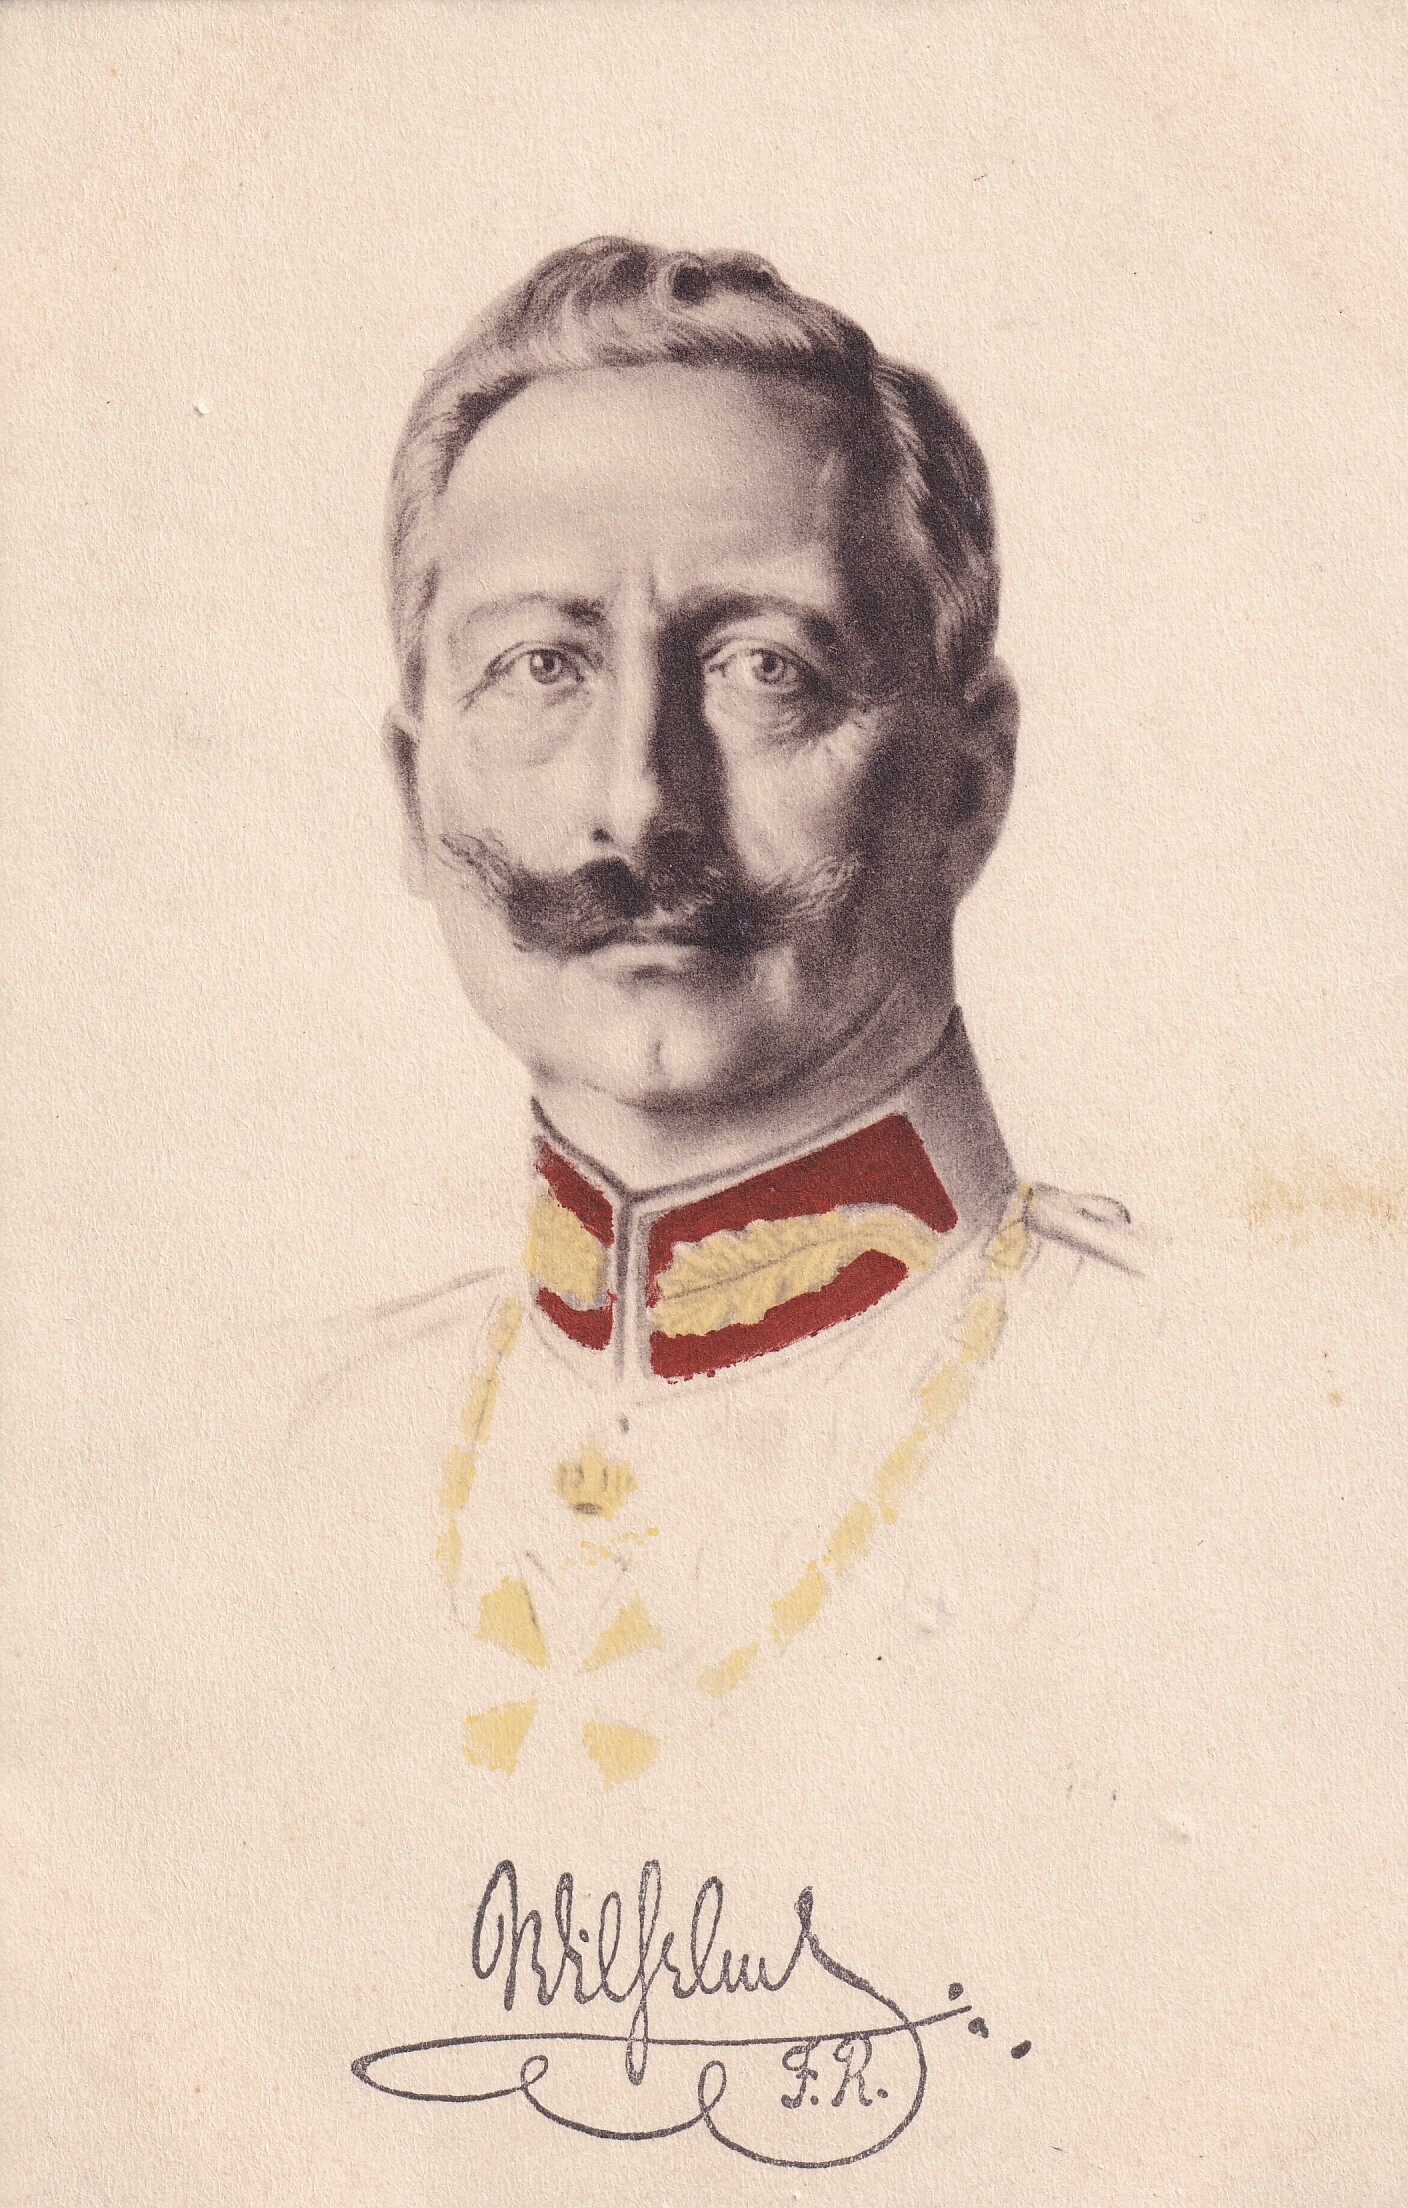 Bildpostkarte mit grafischem Porträt Kaiser Wilhelms II. (1859-1941), um 1905 (Schloß Wernigerode GmbH RR-F)